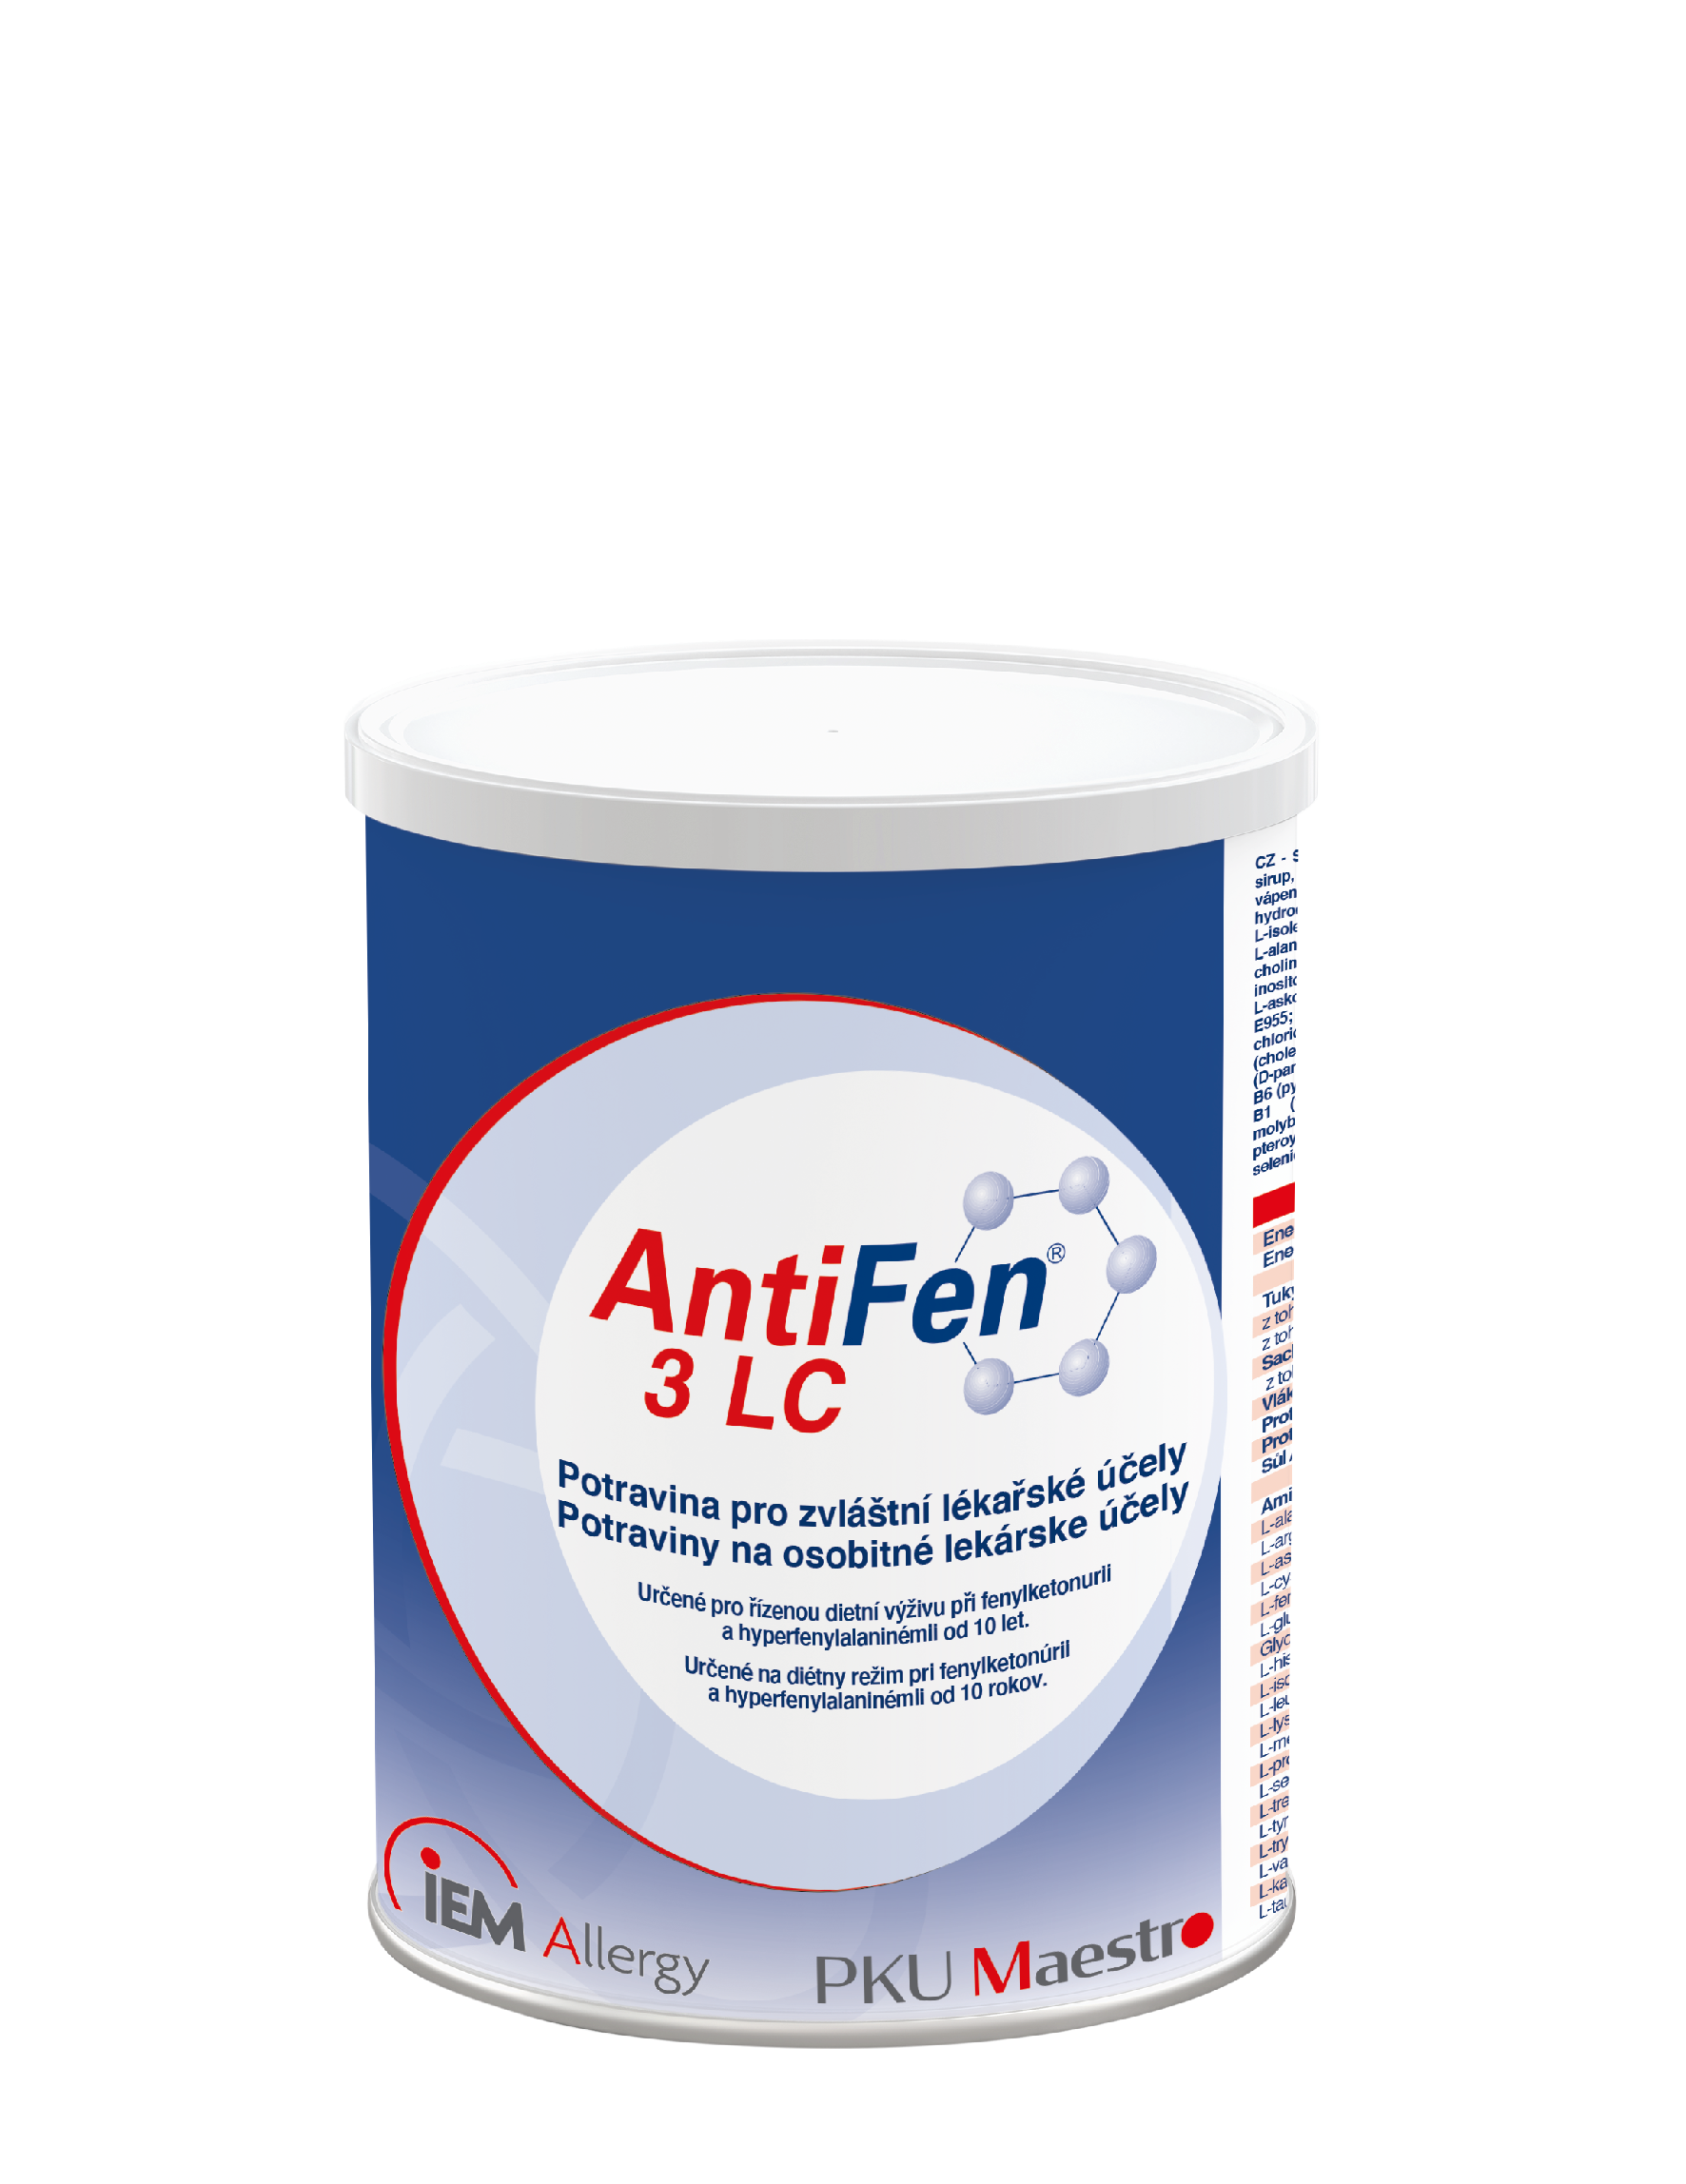 AntiFen 3 LC